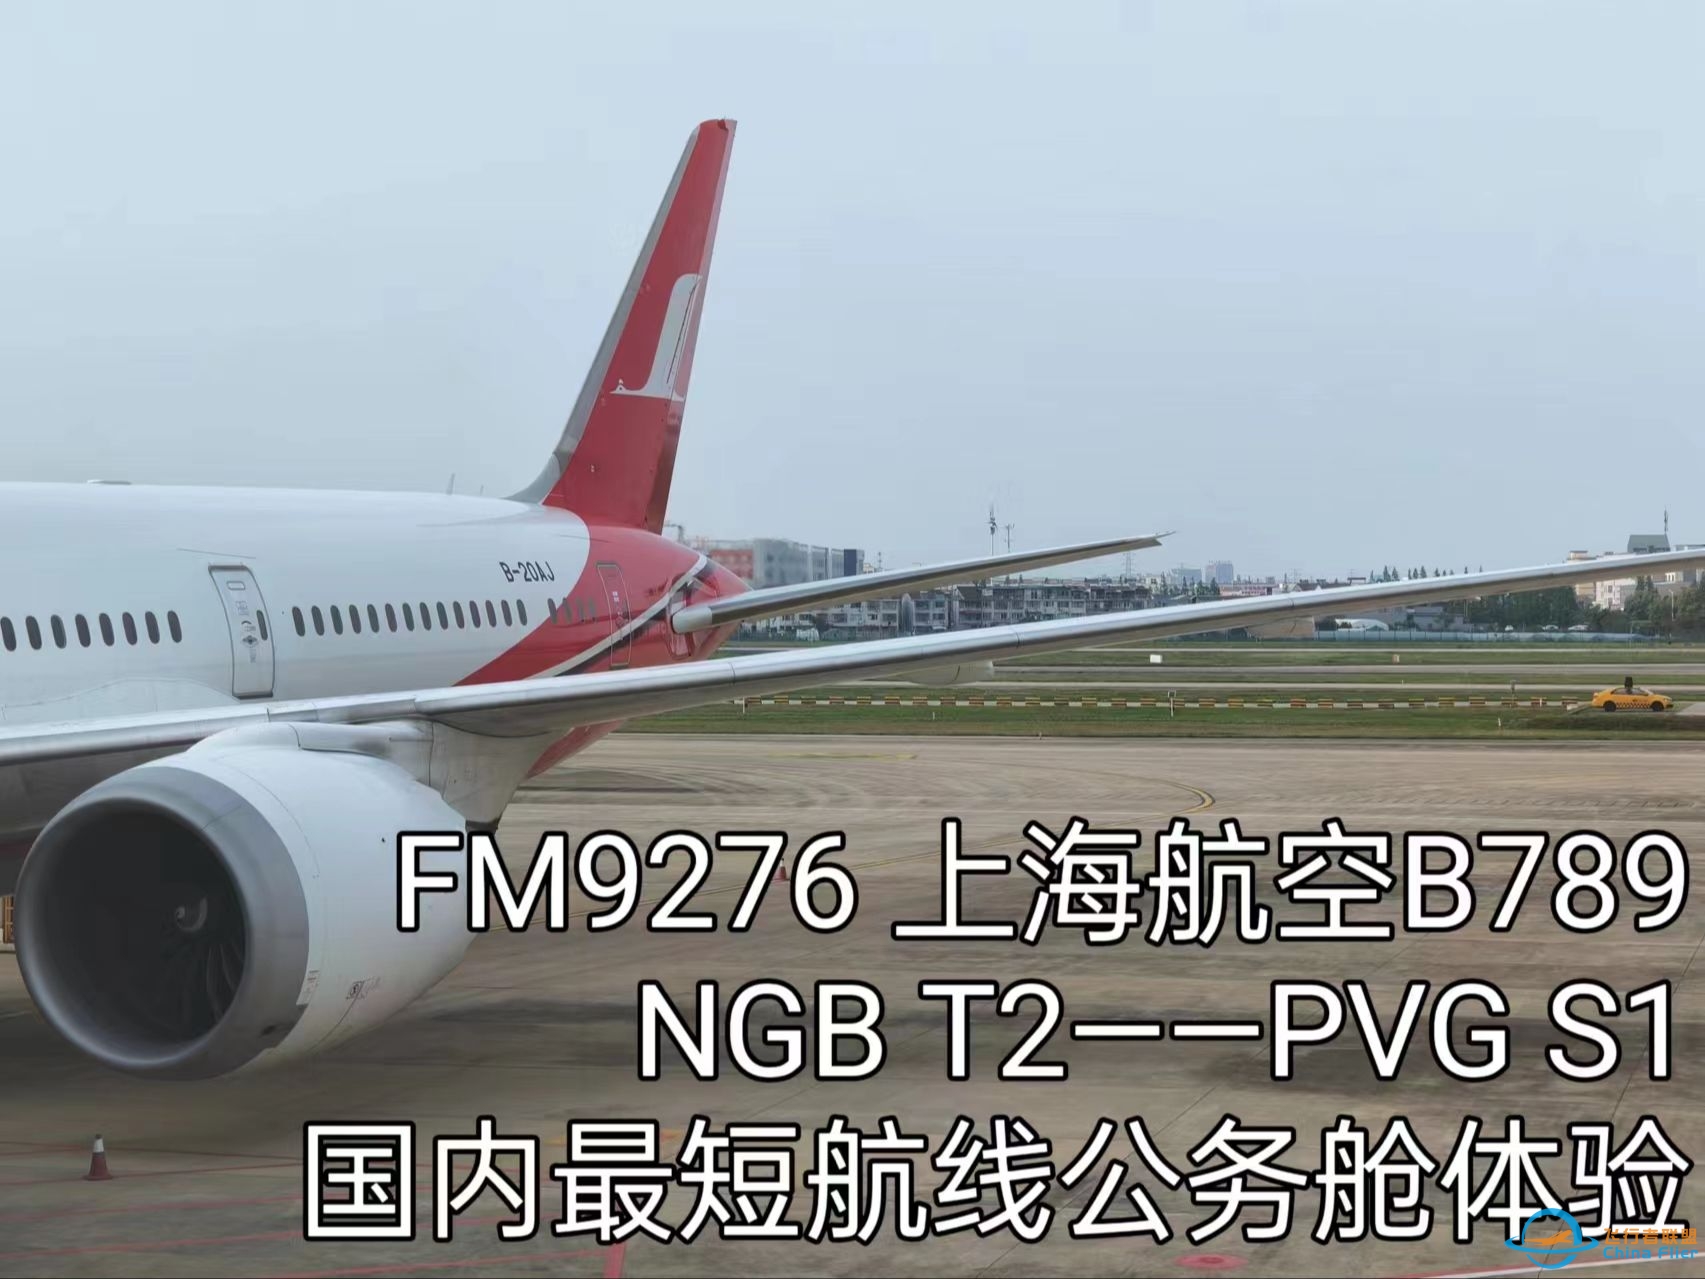 FM9276 NGB栎社——PVG浦东 目前国内最短航线 公务舱飞行体验-706 